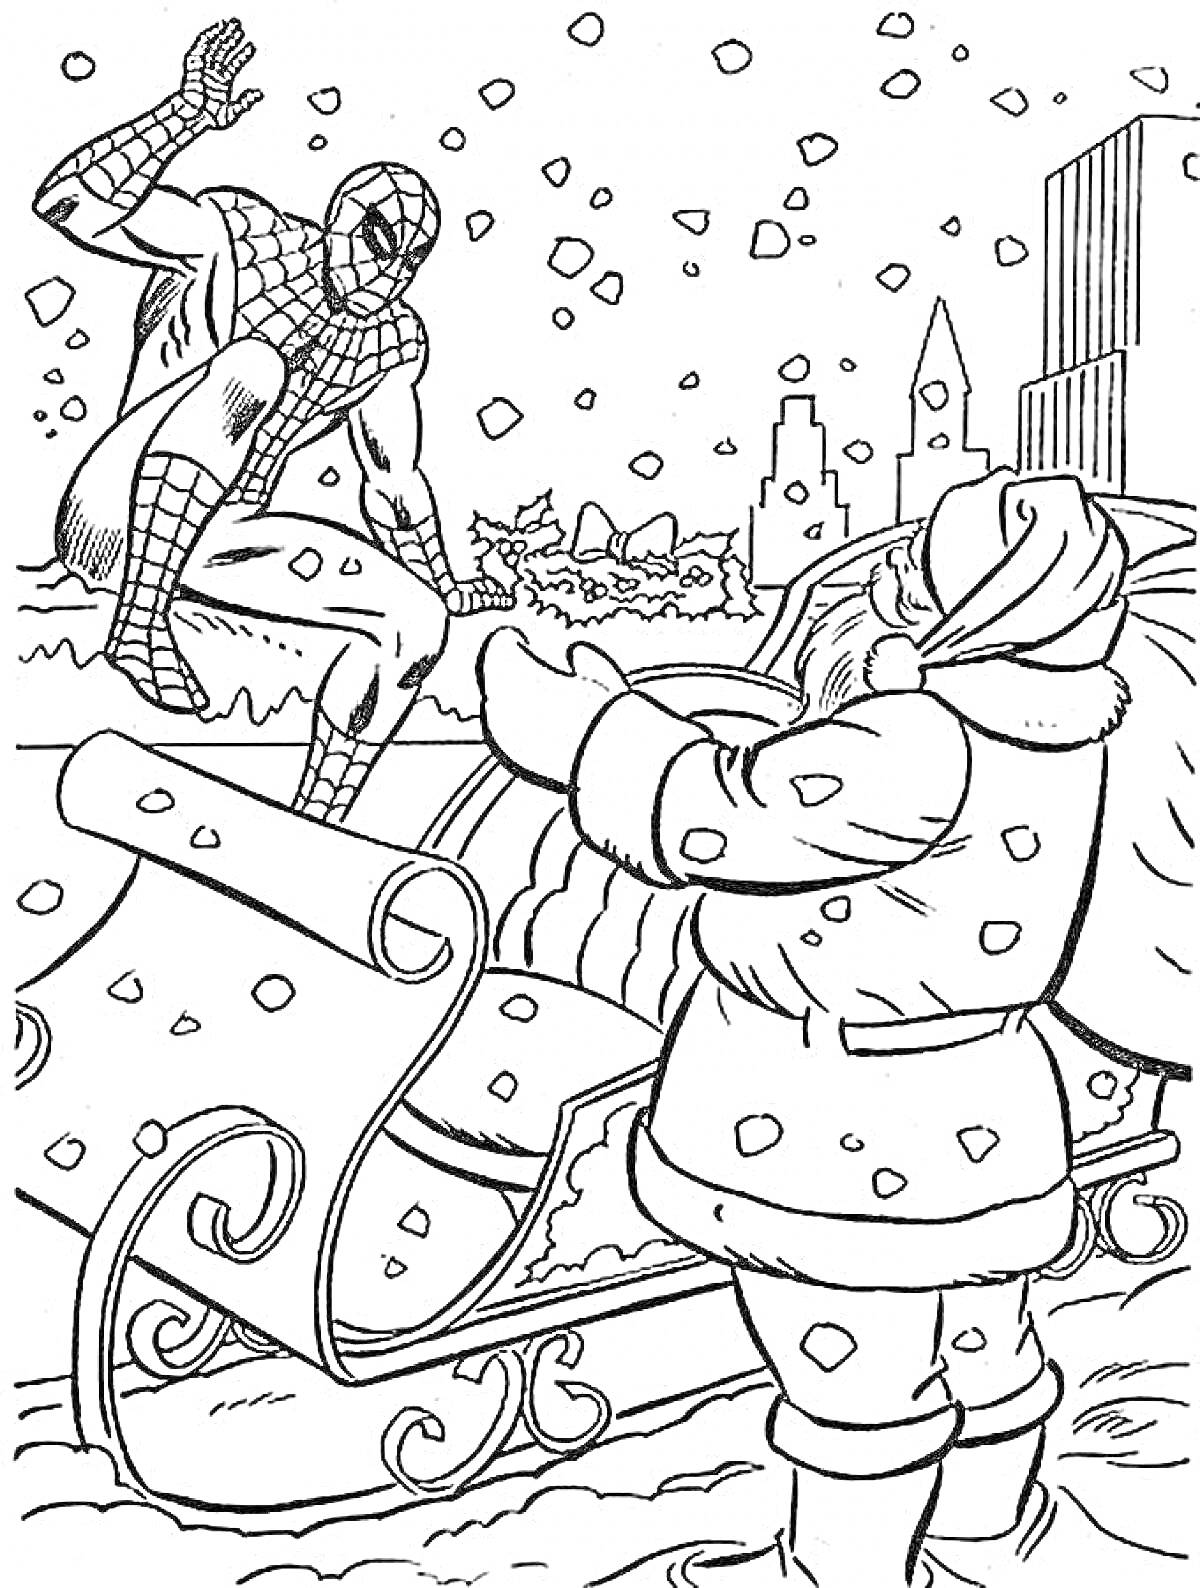 Раскраска Человек-Паук и Санта-Клаус возле саней на фоне города, падает снег